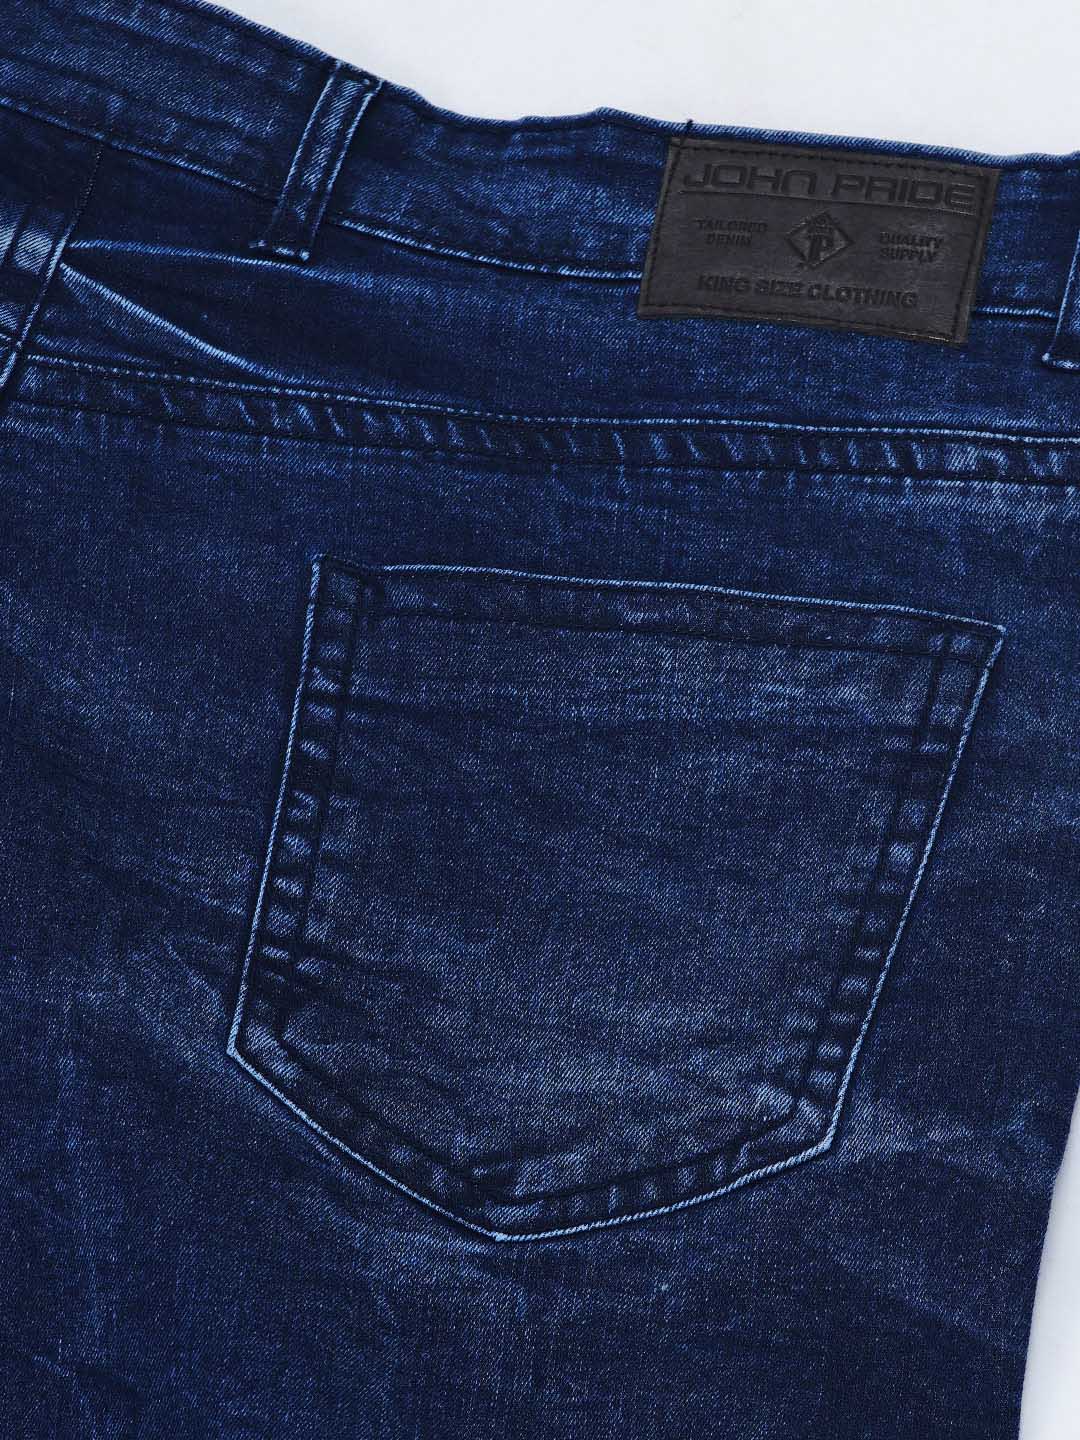 bottomwear/jeans/JPJ1292/jpj1292-2.jpg